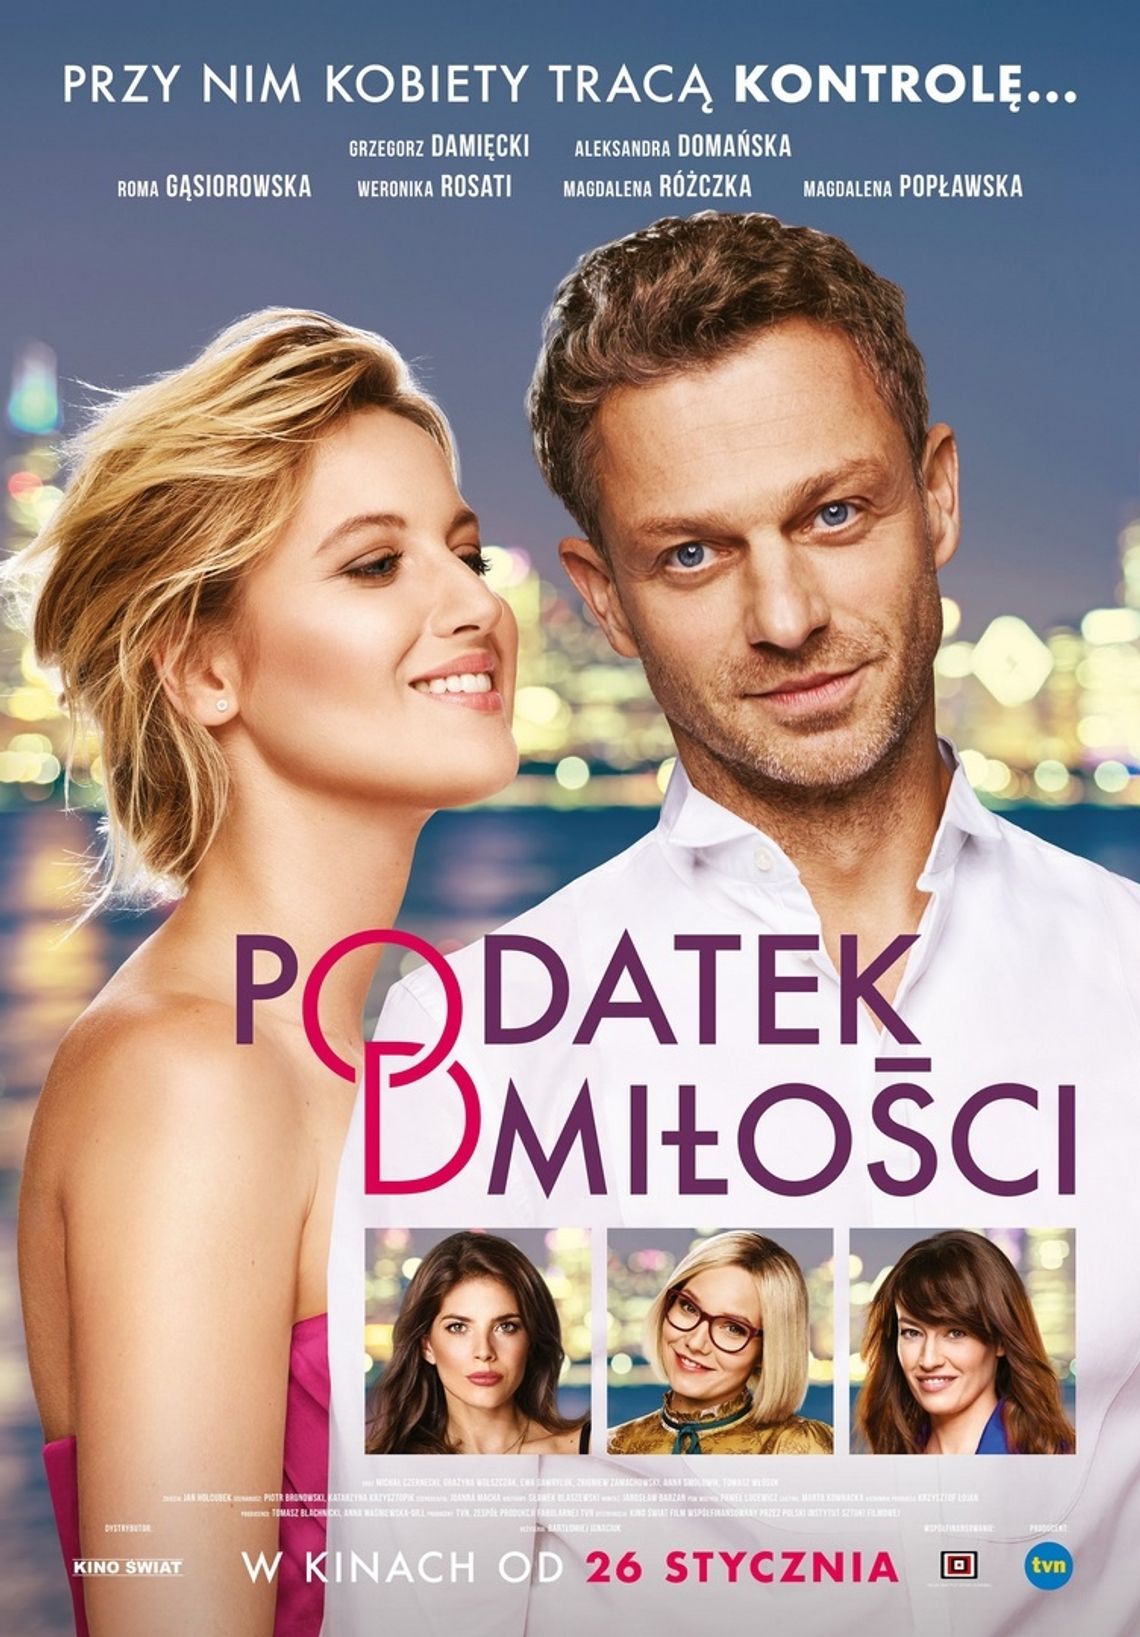 Polska komedia romantyczna „Podatek od miłości” w Kinie Łuków